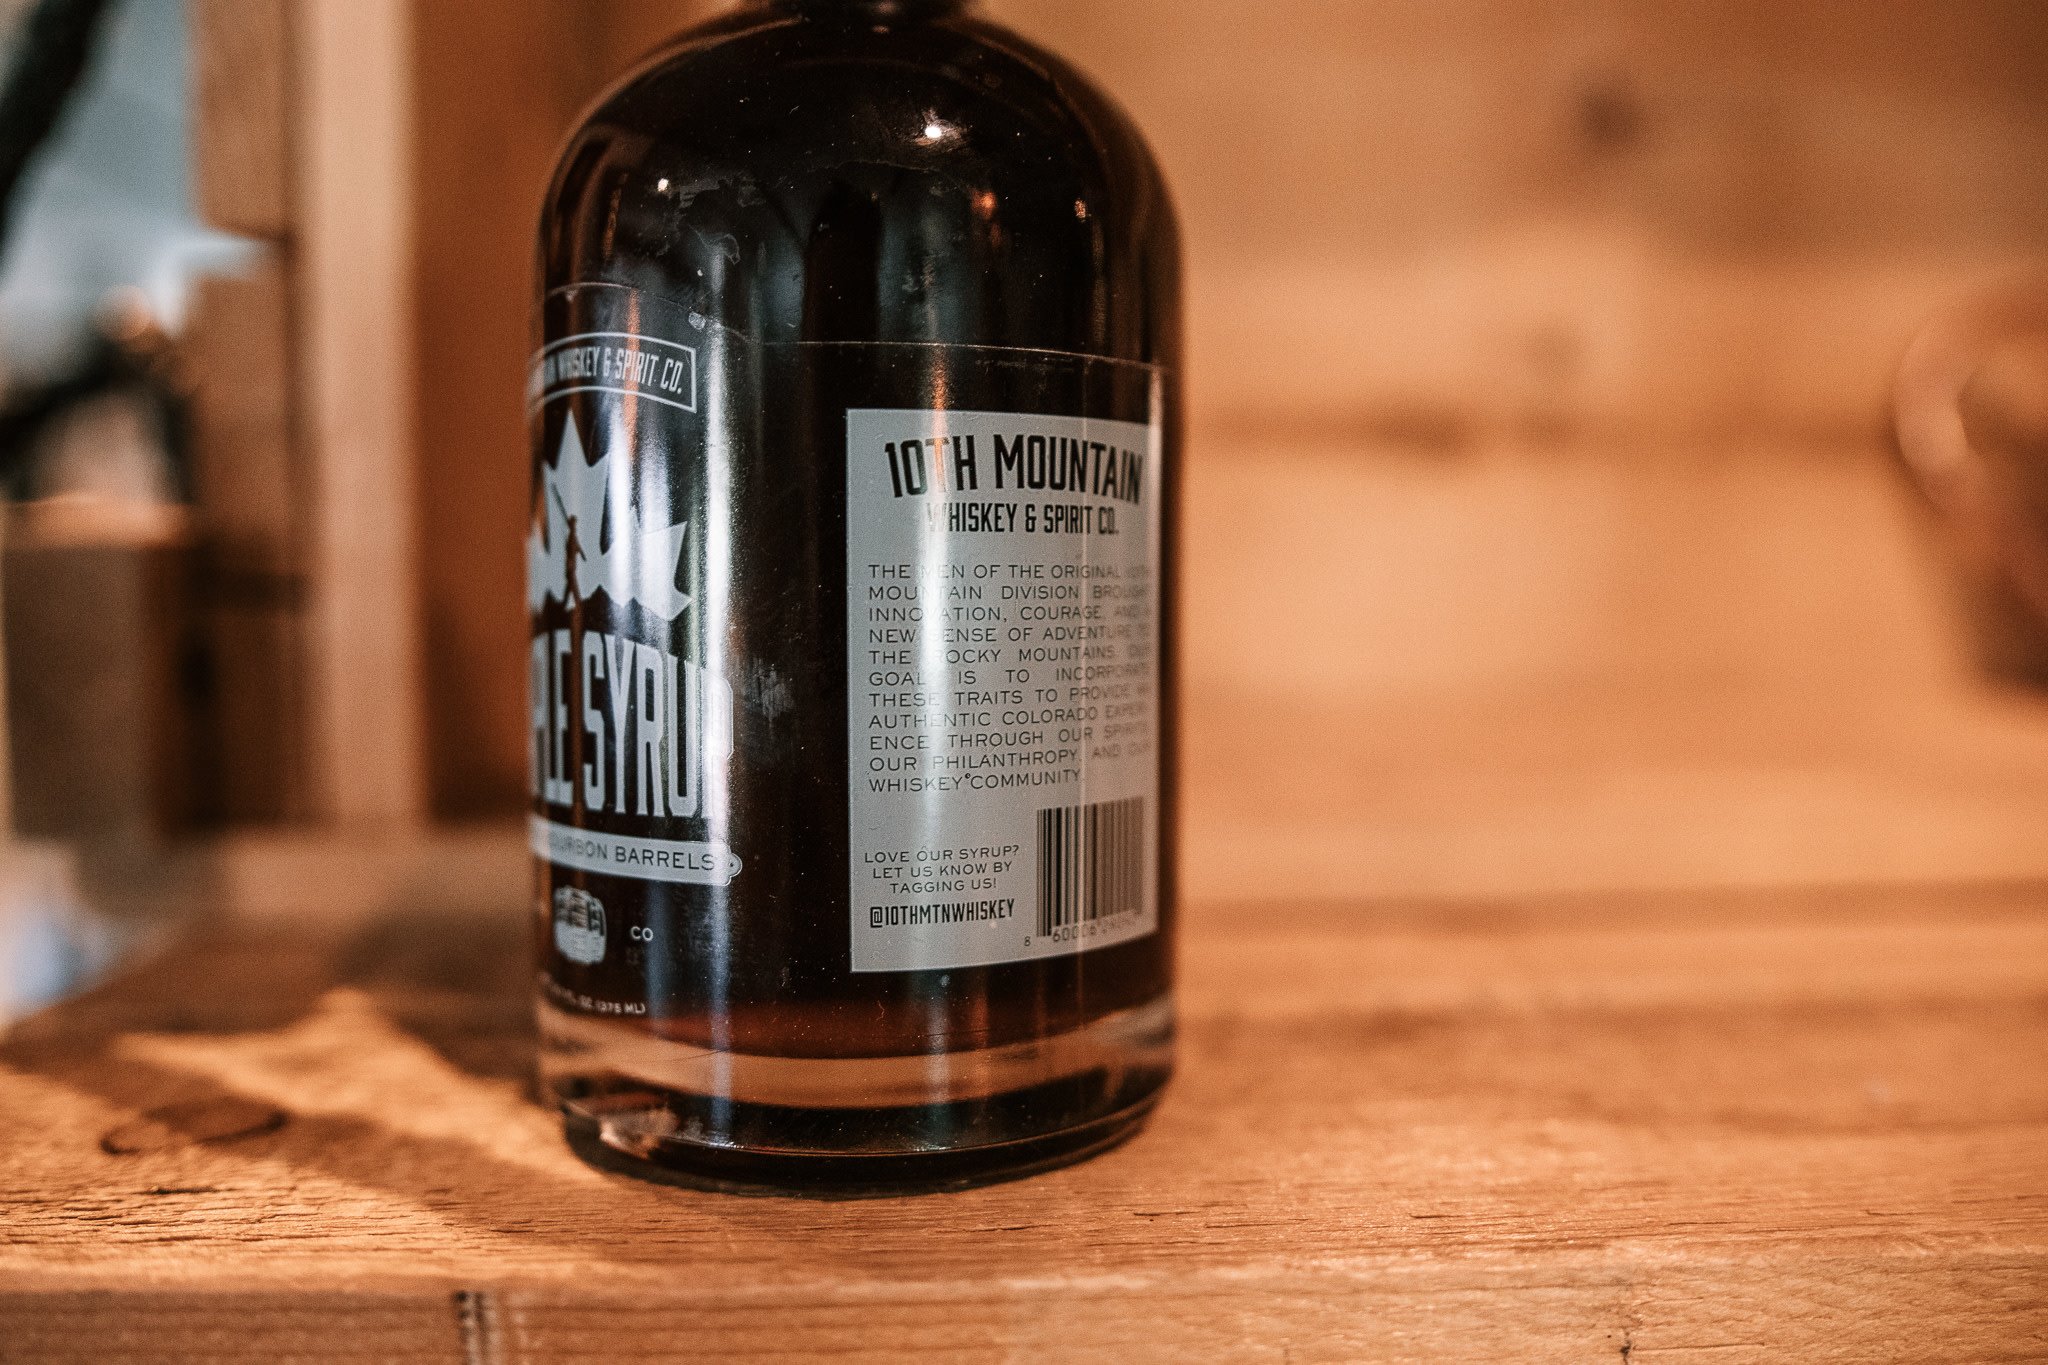 10th Mountain Whiskey & Spirit Co. Bourbon Maple Syrup